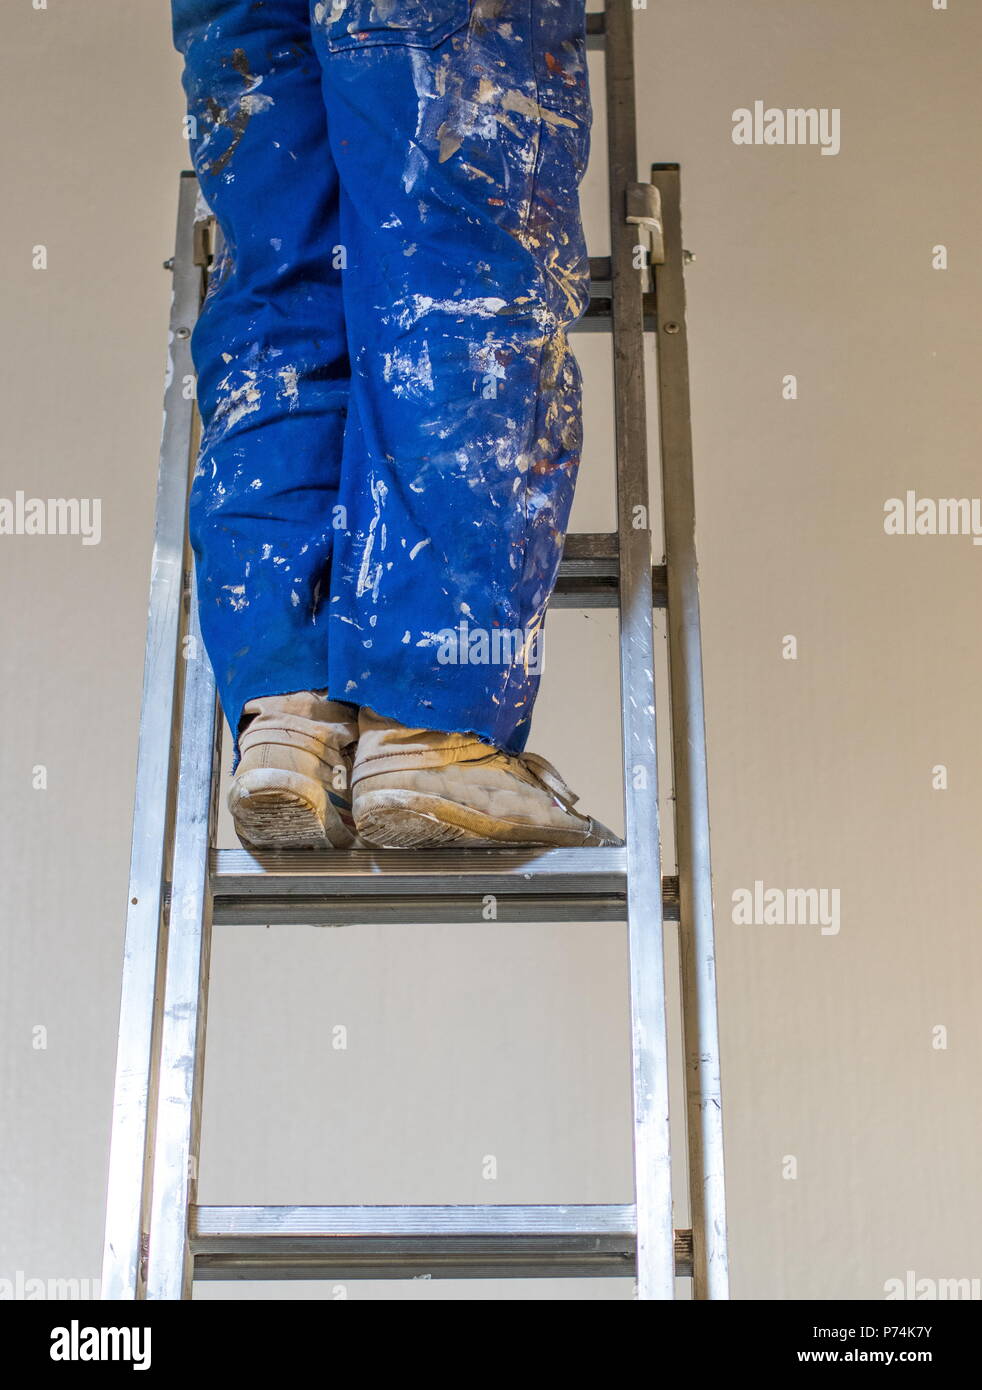 Le gambe di una persona che indossa una vernice blu-colorate nel complesso in piedi su una scala immagine con spazio copia in formato verticale Foto Stock